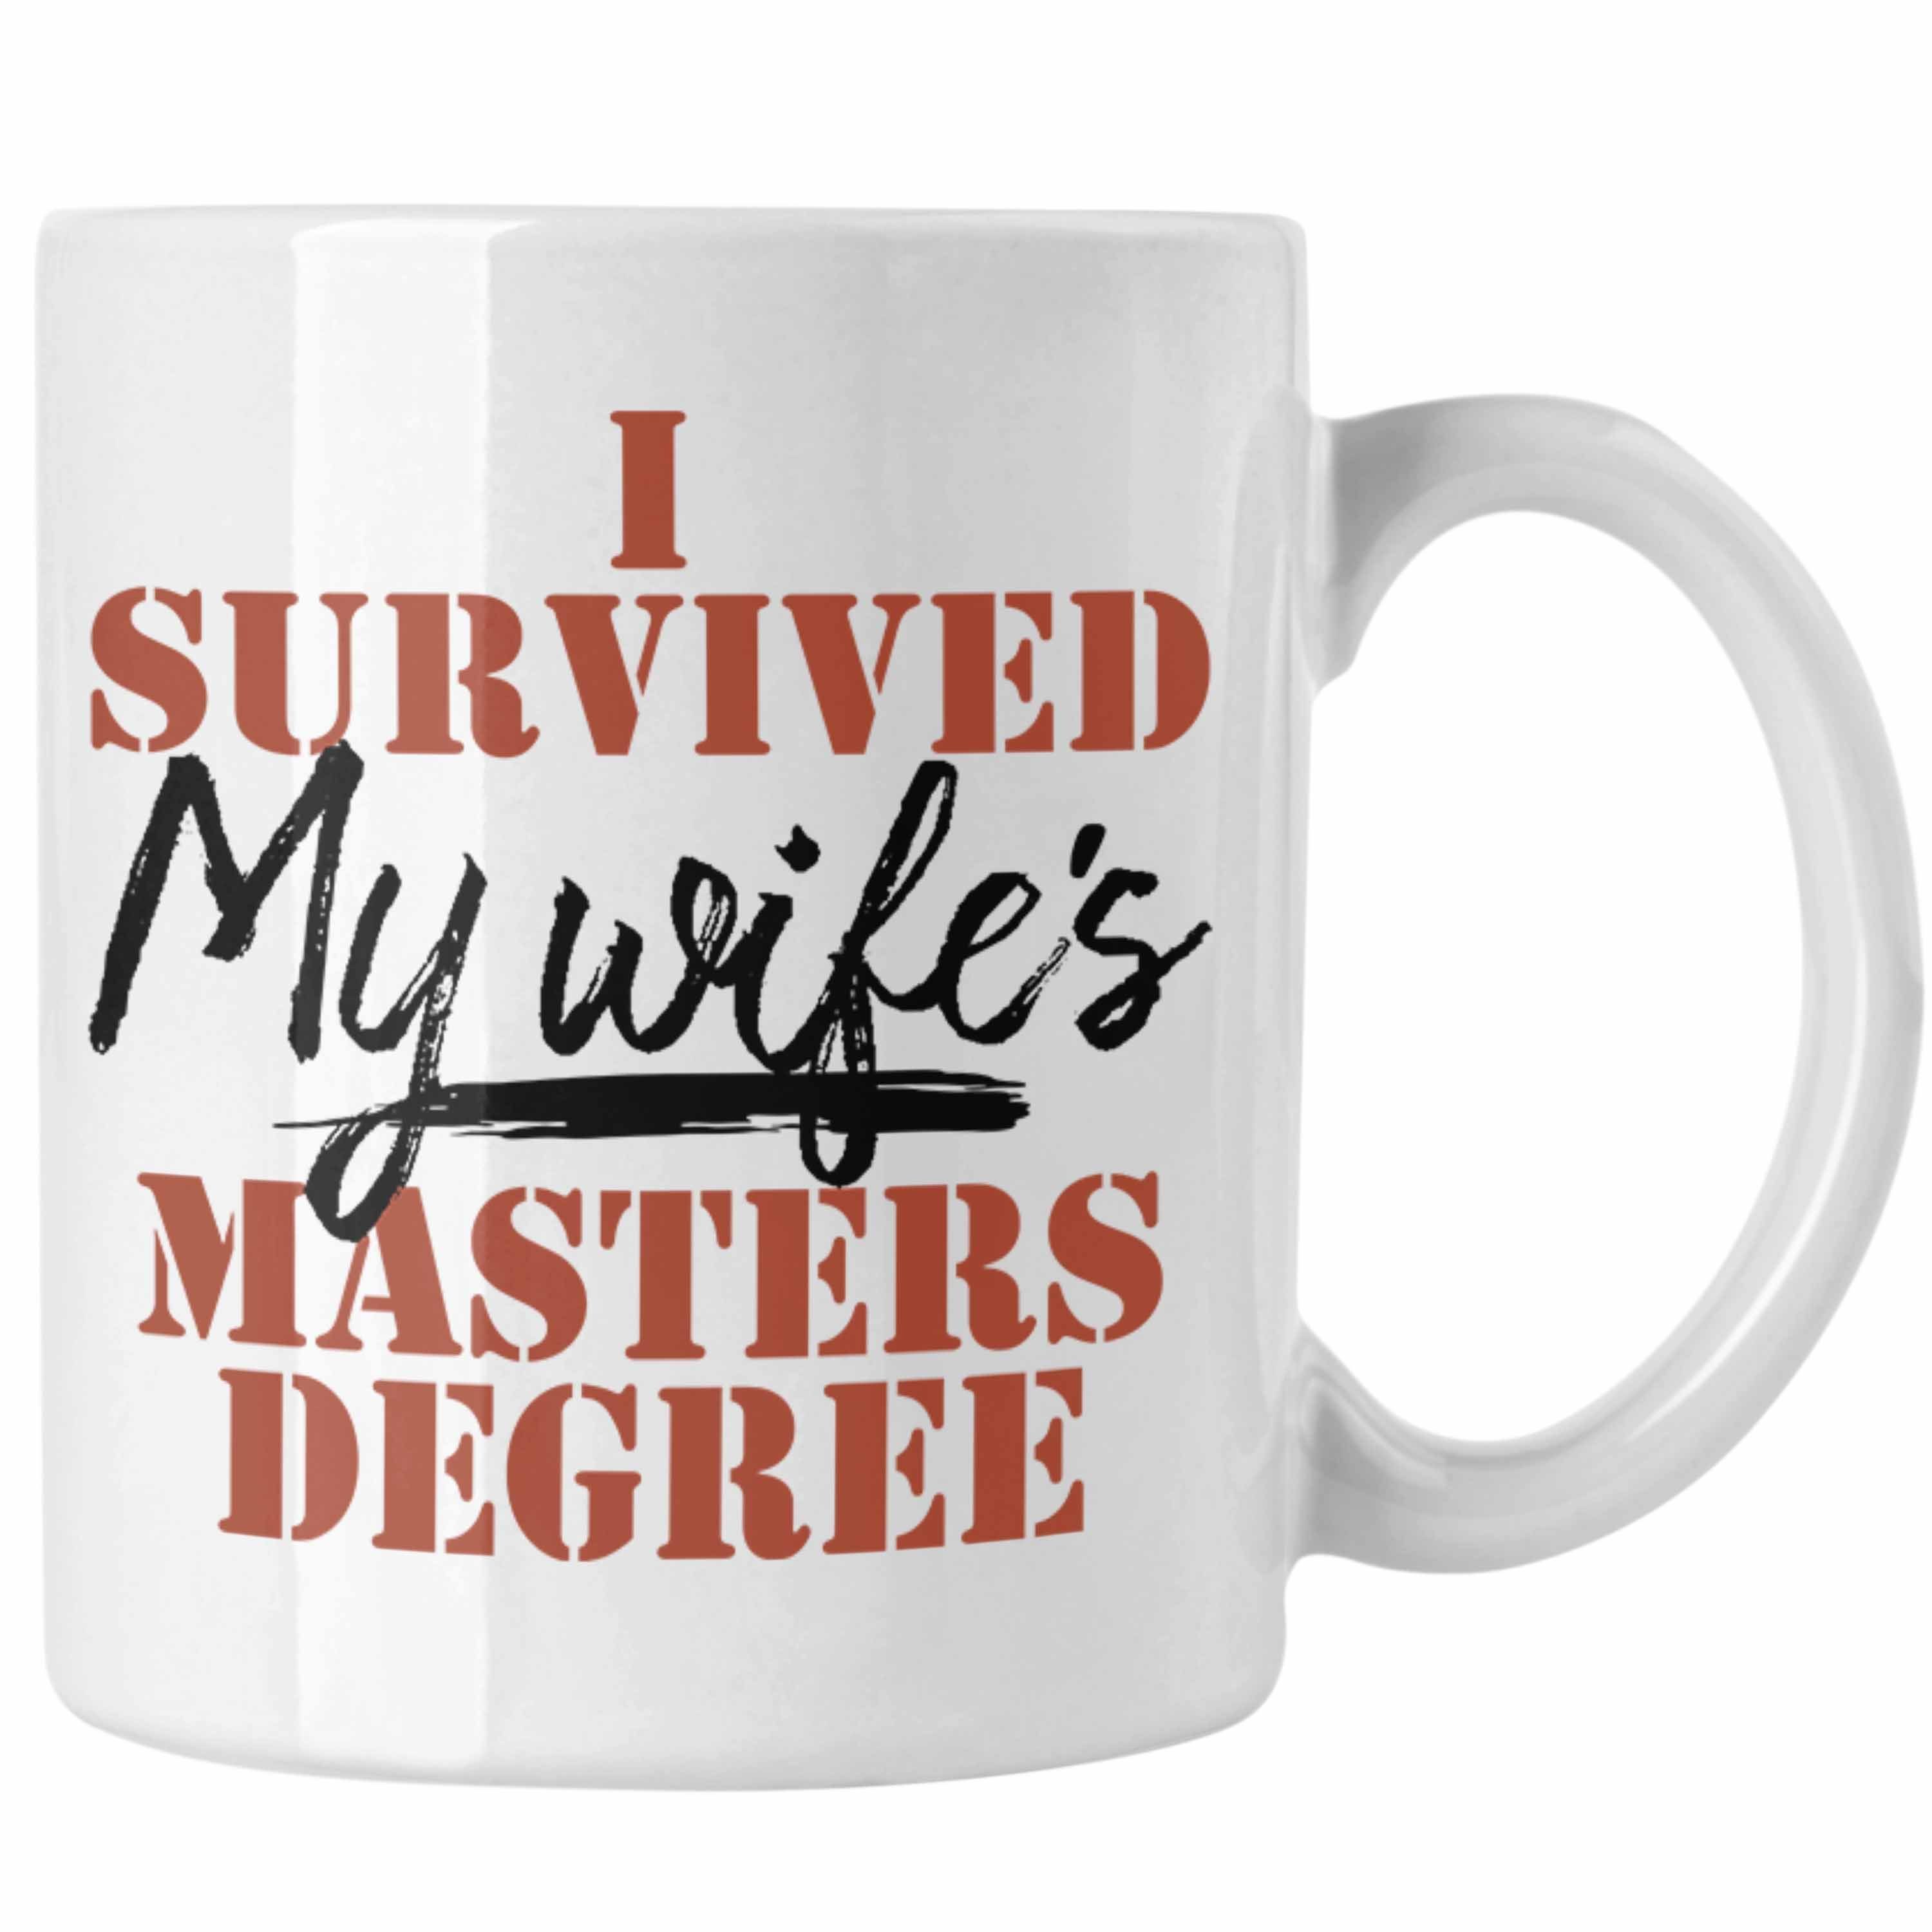 Trendation Wife's Master Ehefr Weiss Survived der Masterabschlusses Degree" "I Tasse My Tasse